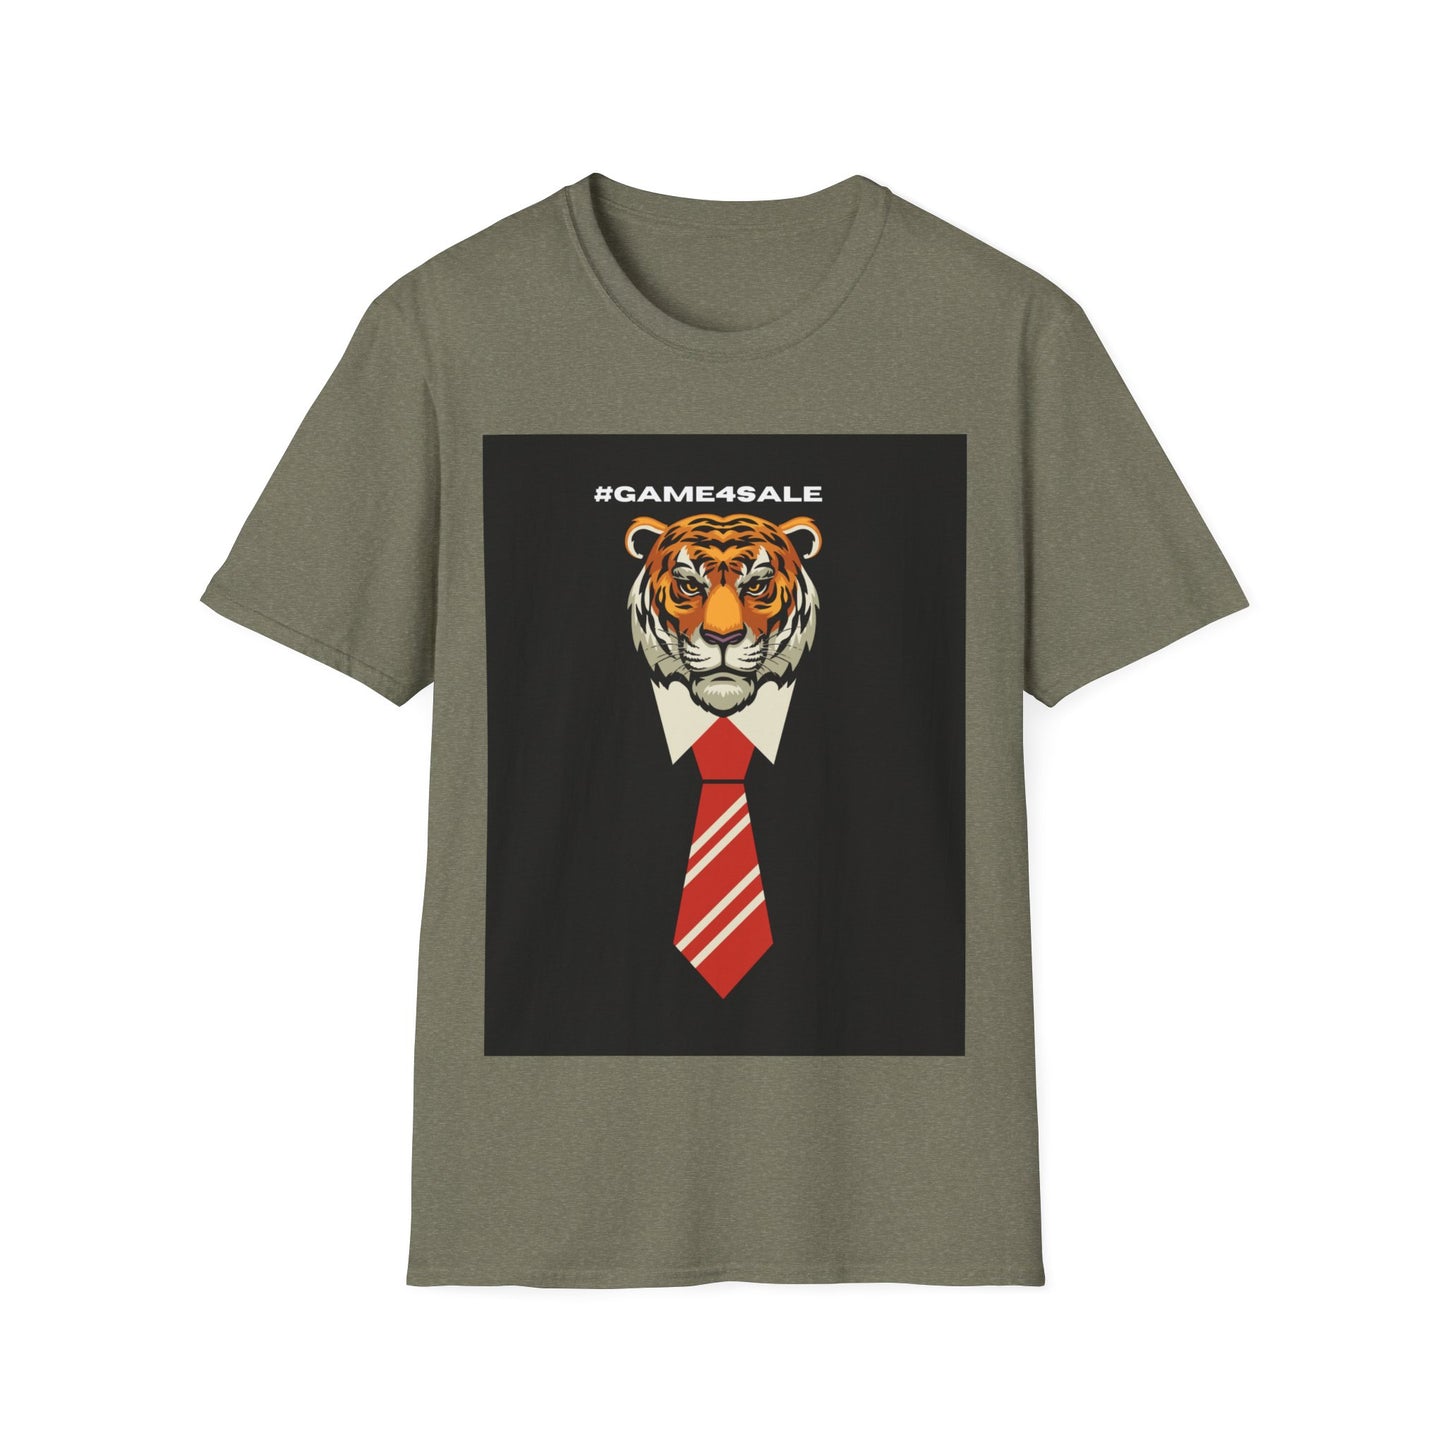 The Executive Shirt